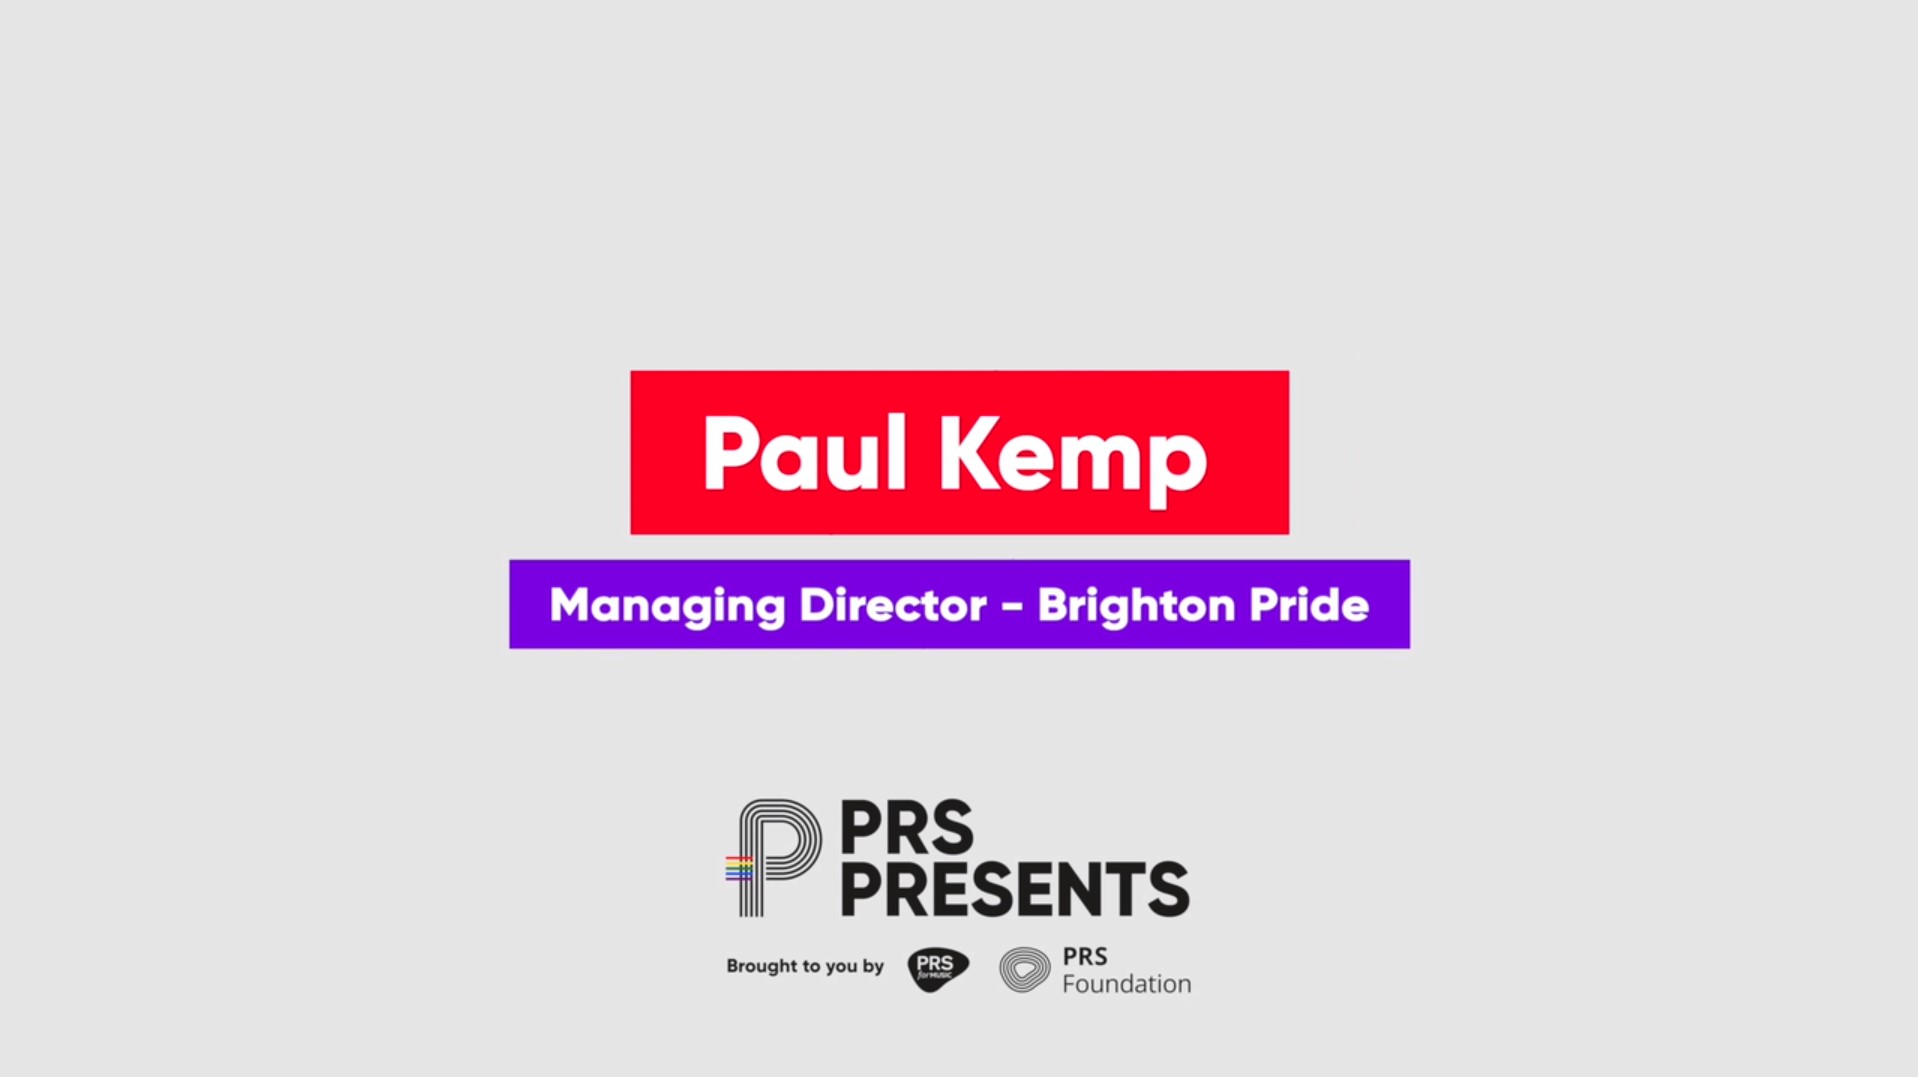 Paul Kemp